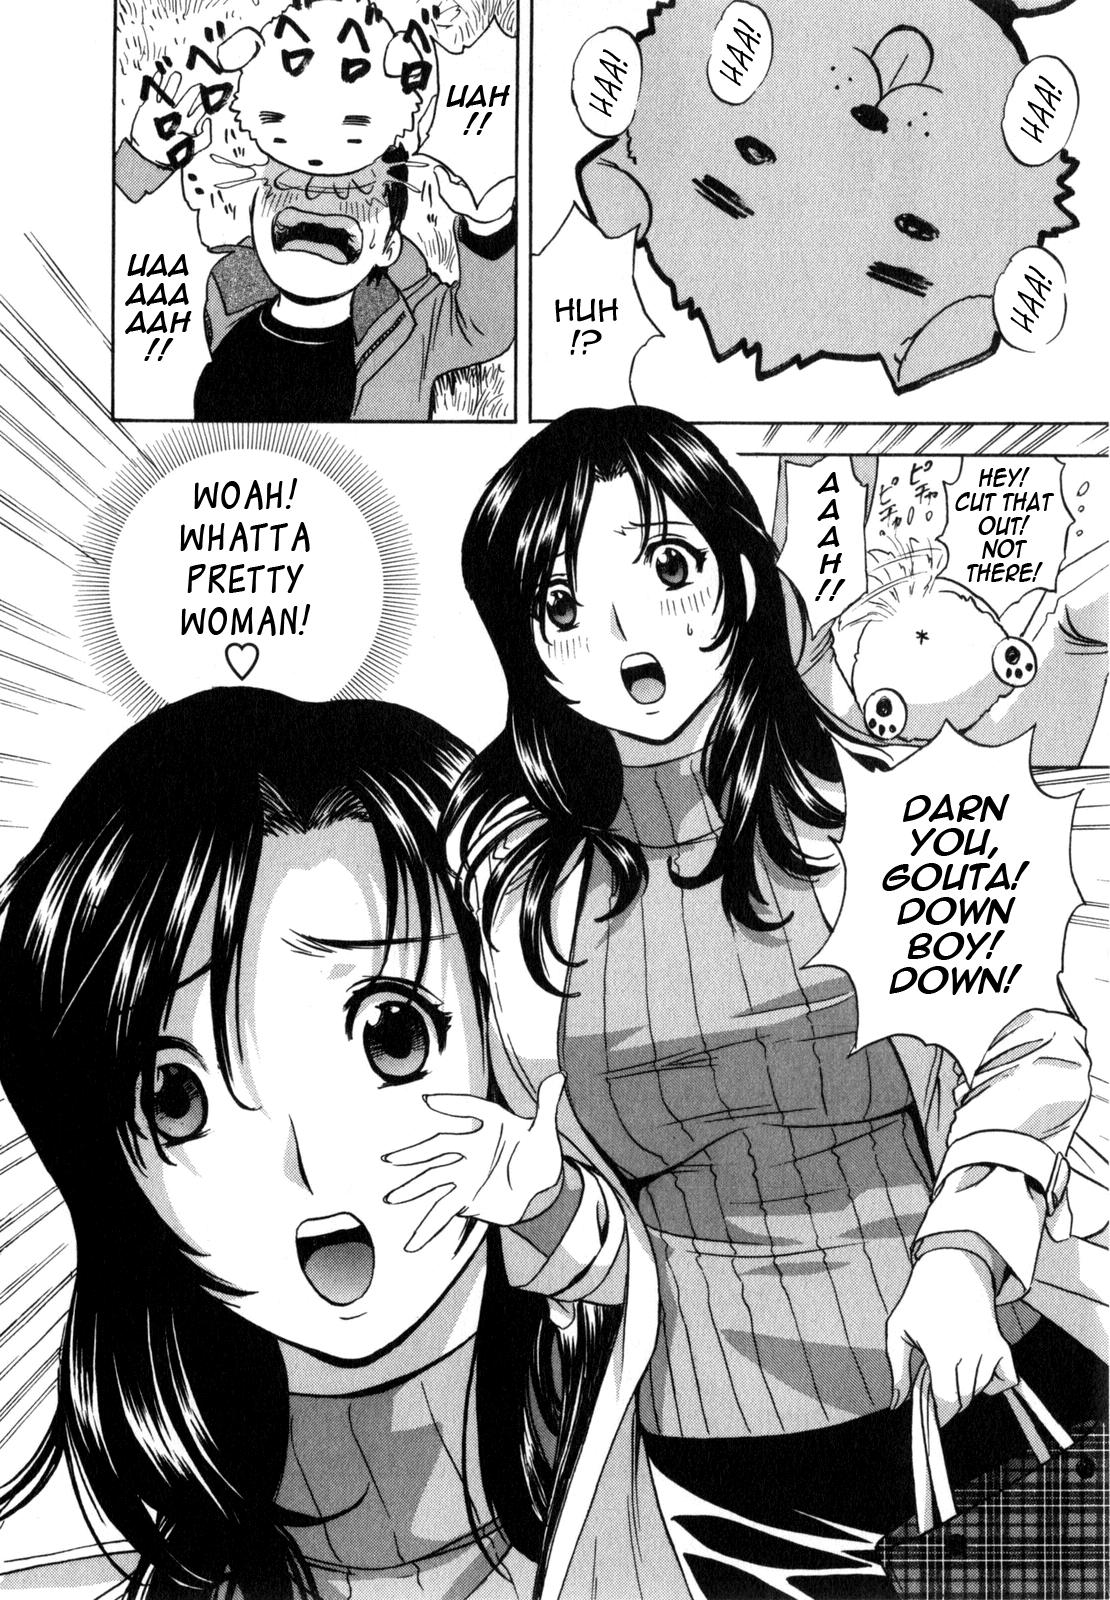 Manga no youna Hitozuma to no Hibi - Days with Married Women such as Comics. 10